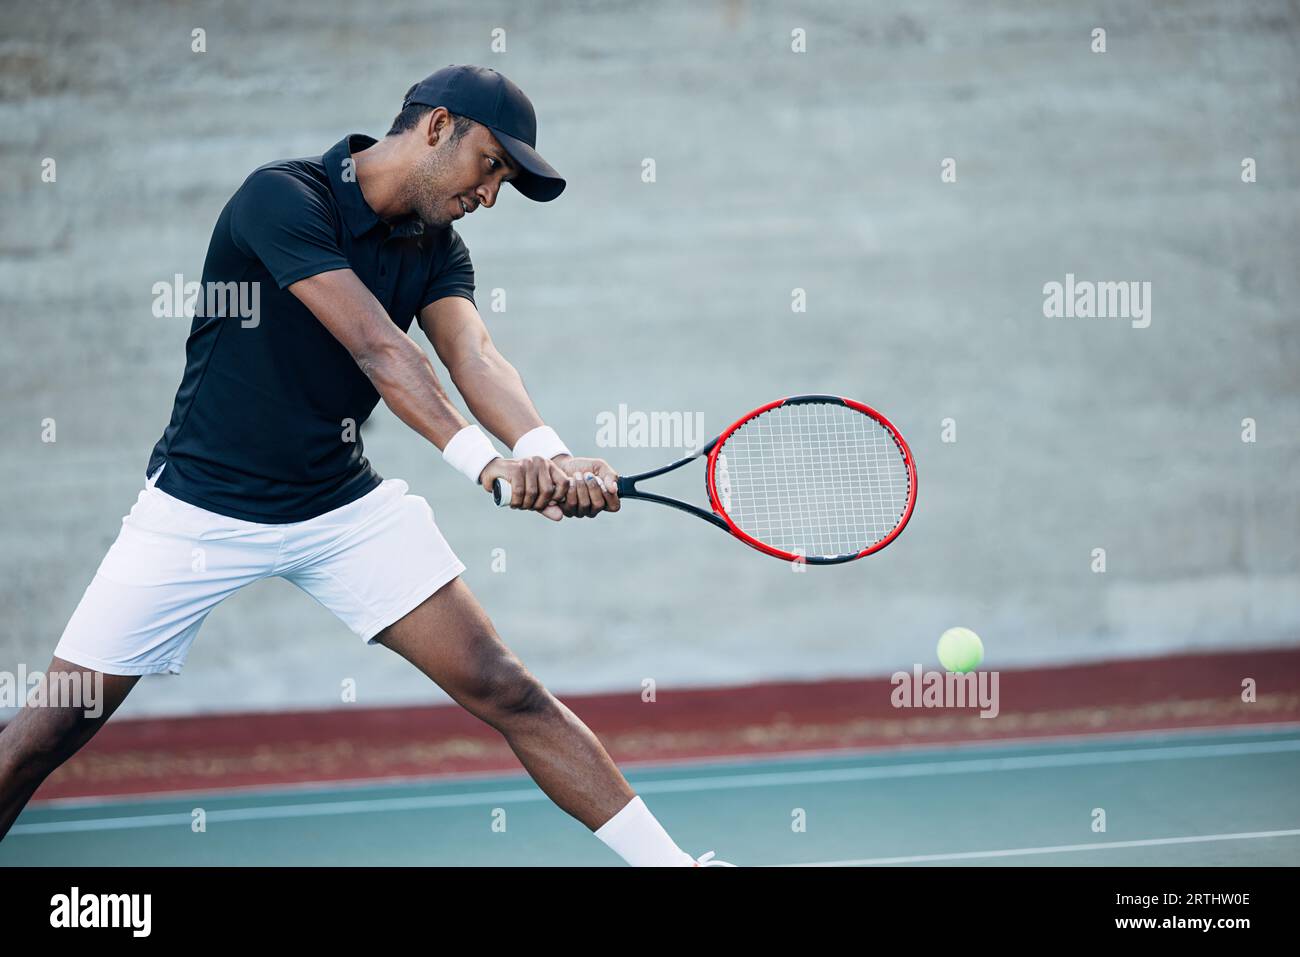 Tennista che riceve il servizio. Tennista professionista che colpisce una palla con una racchetta. Foto Stock